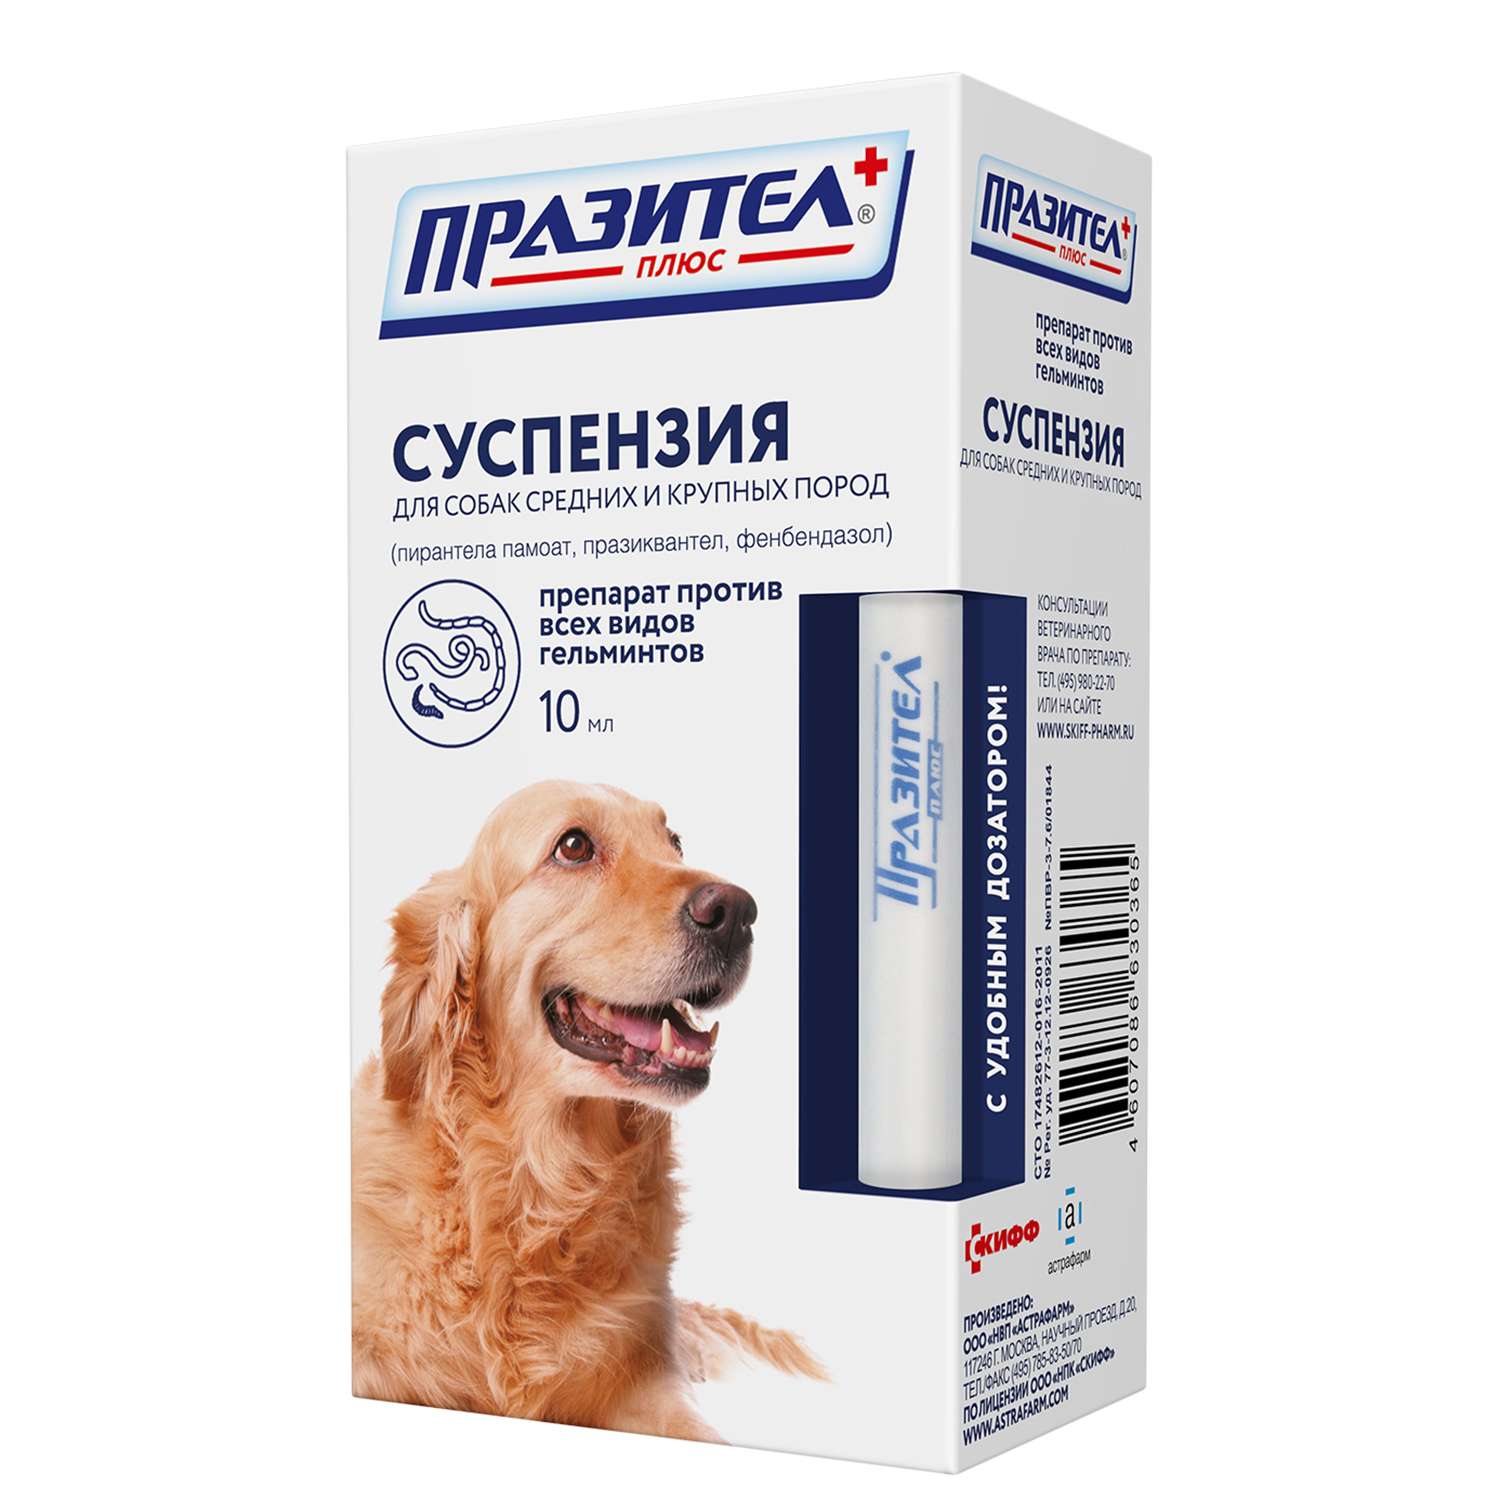 Препарат противопаразитный для собак Астрафарм Празител плюс средних и крупных пород суспензия 10мл - фото 1